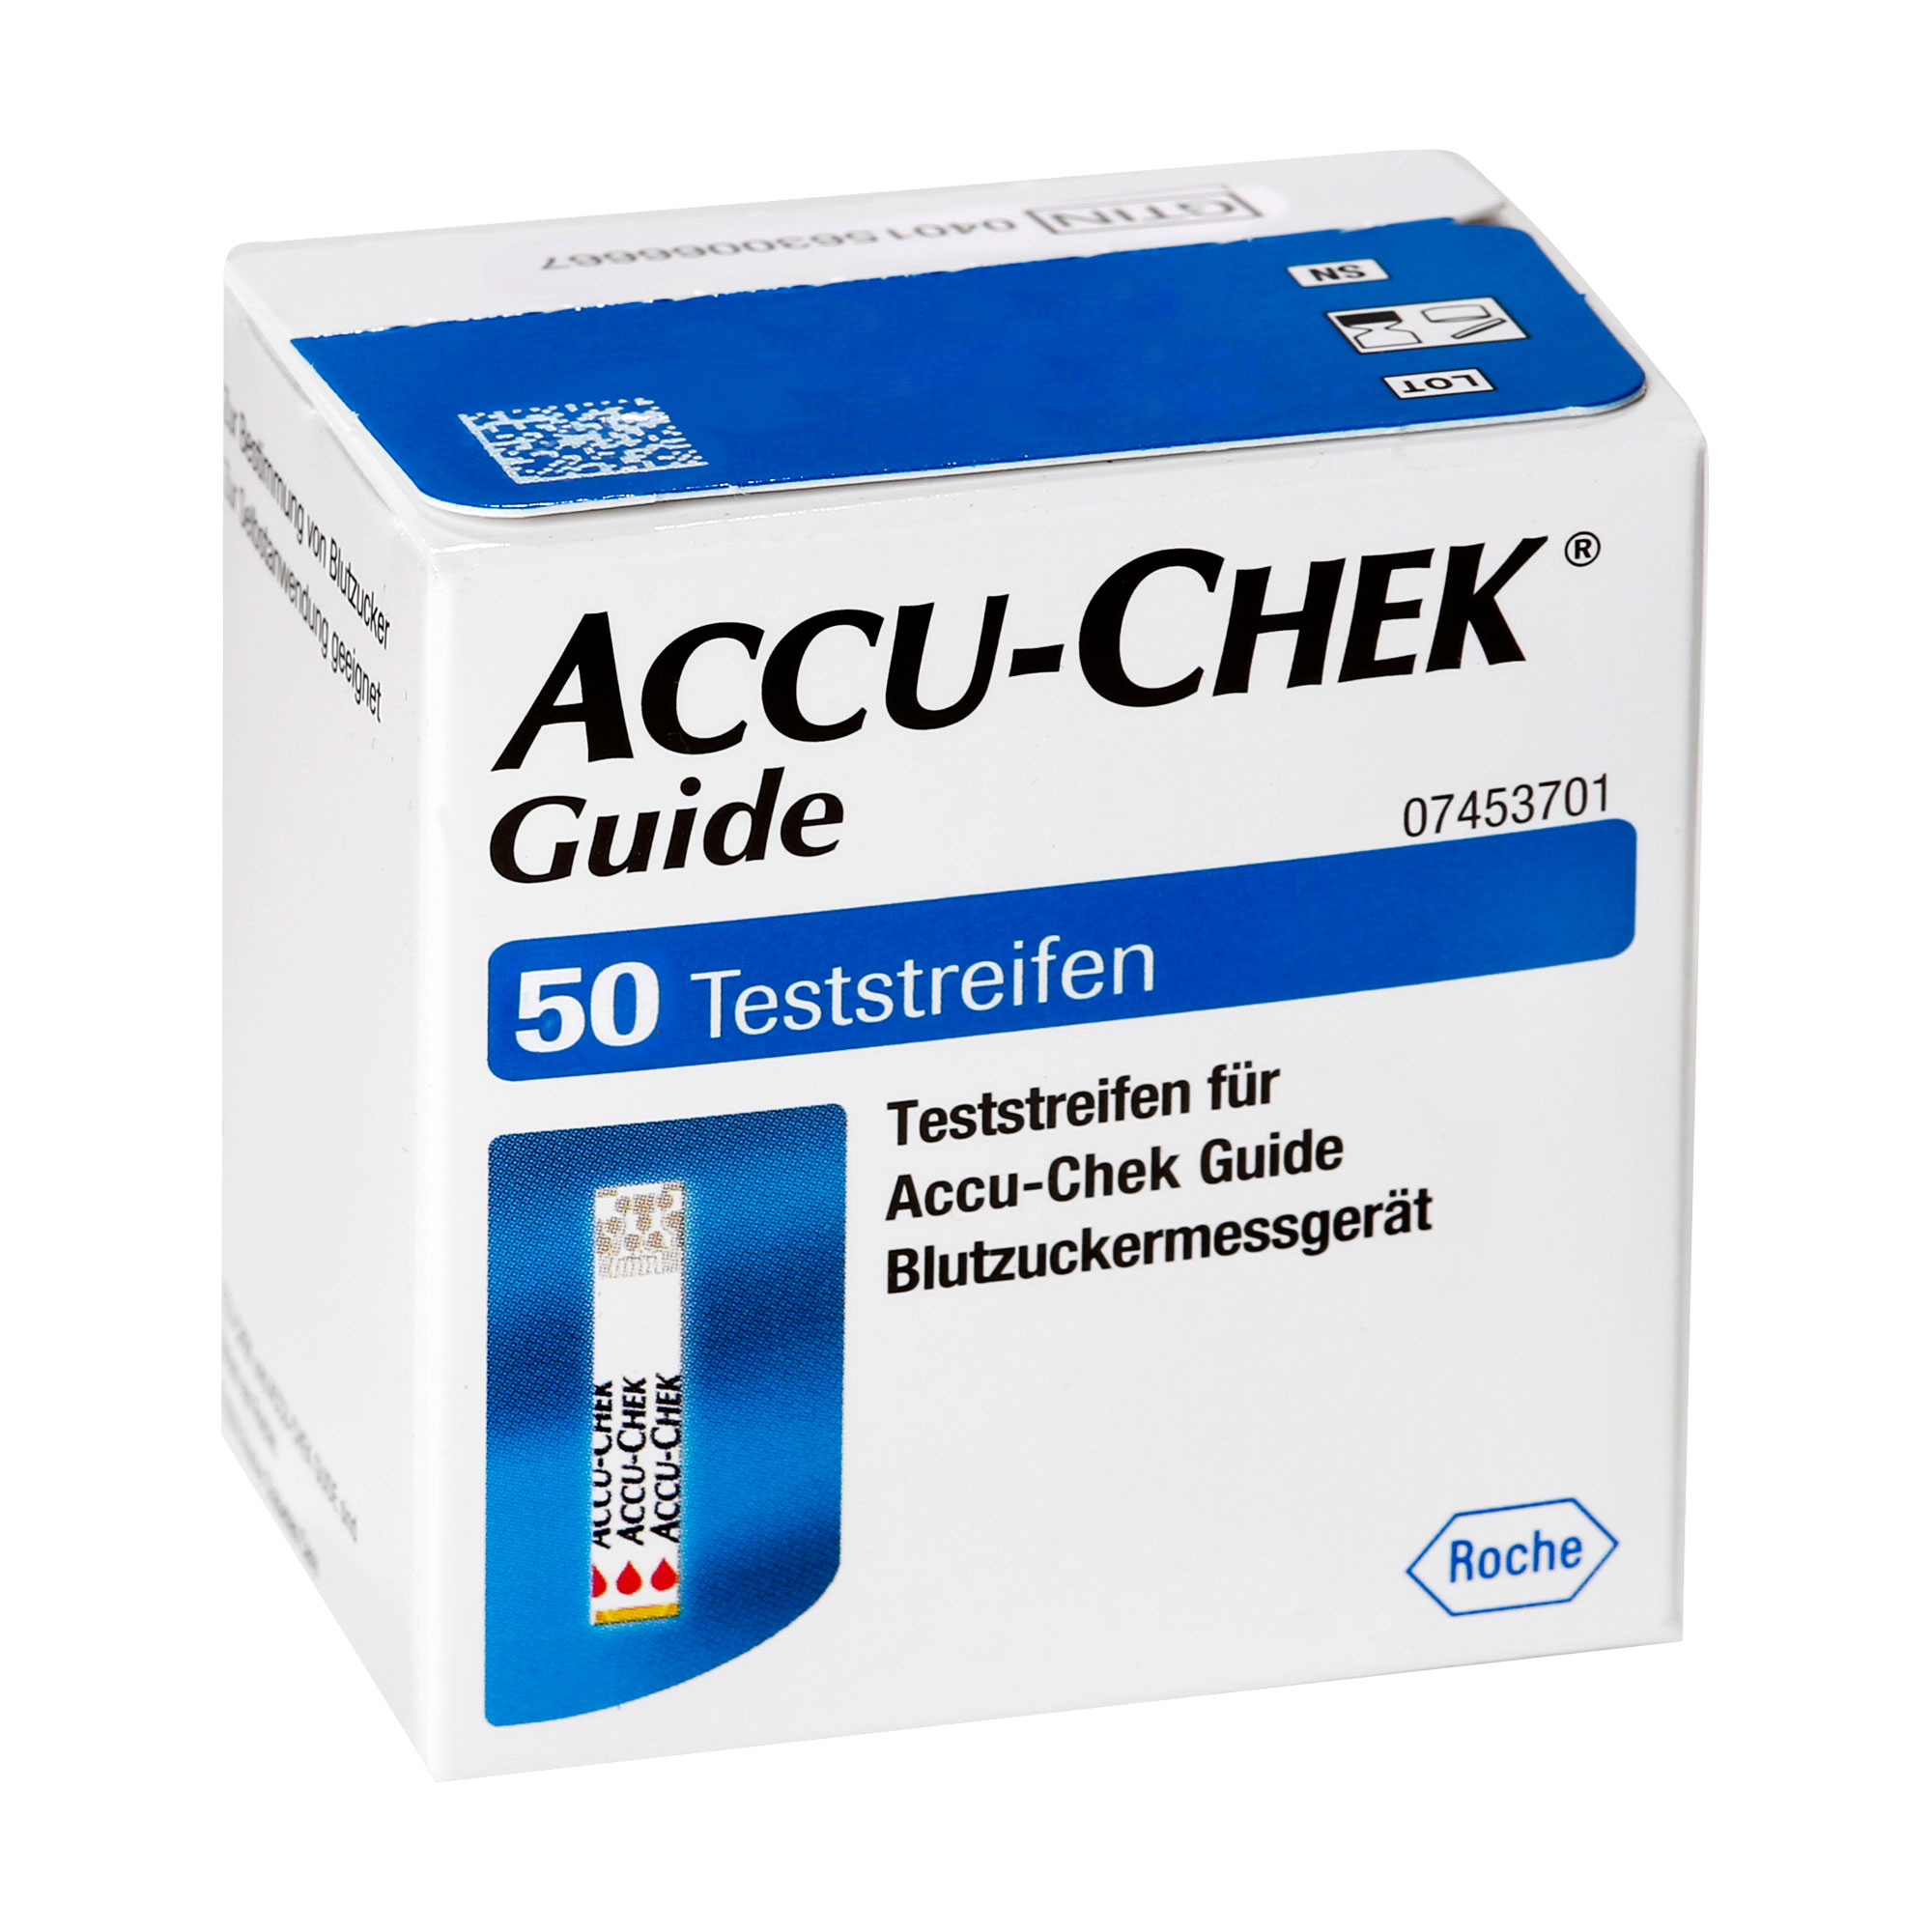 Teststreifen für Accu-Chek Guide zur Bestimmung von Blutzucker.